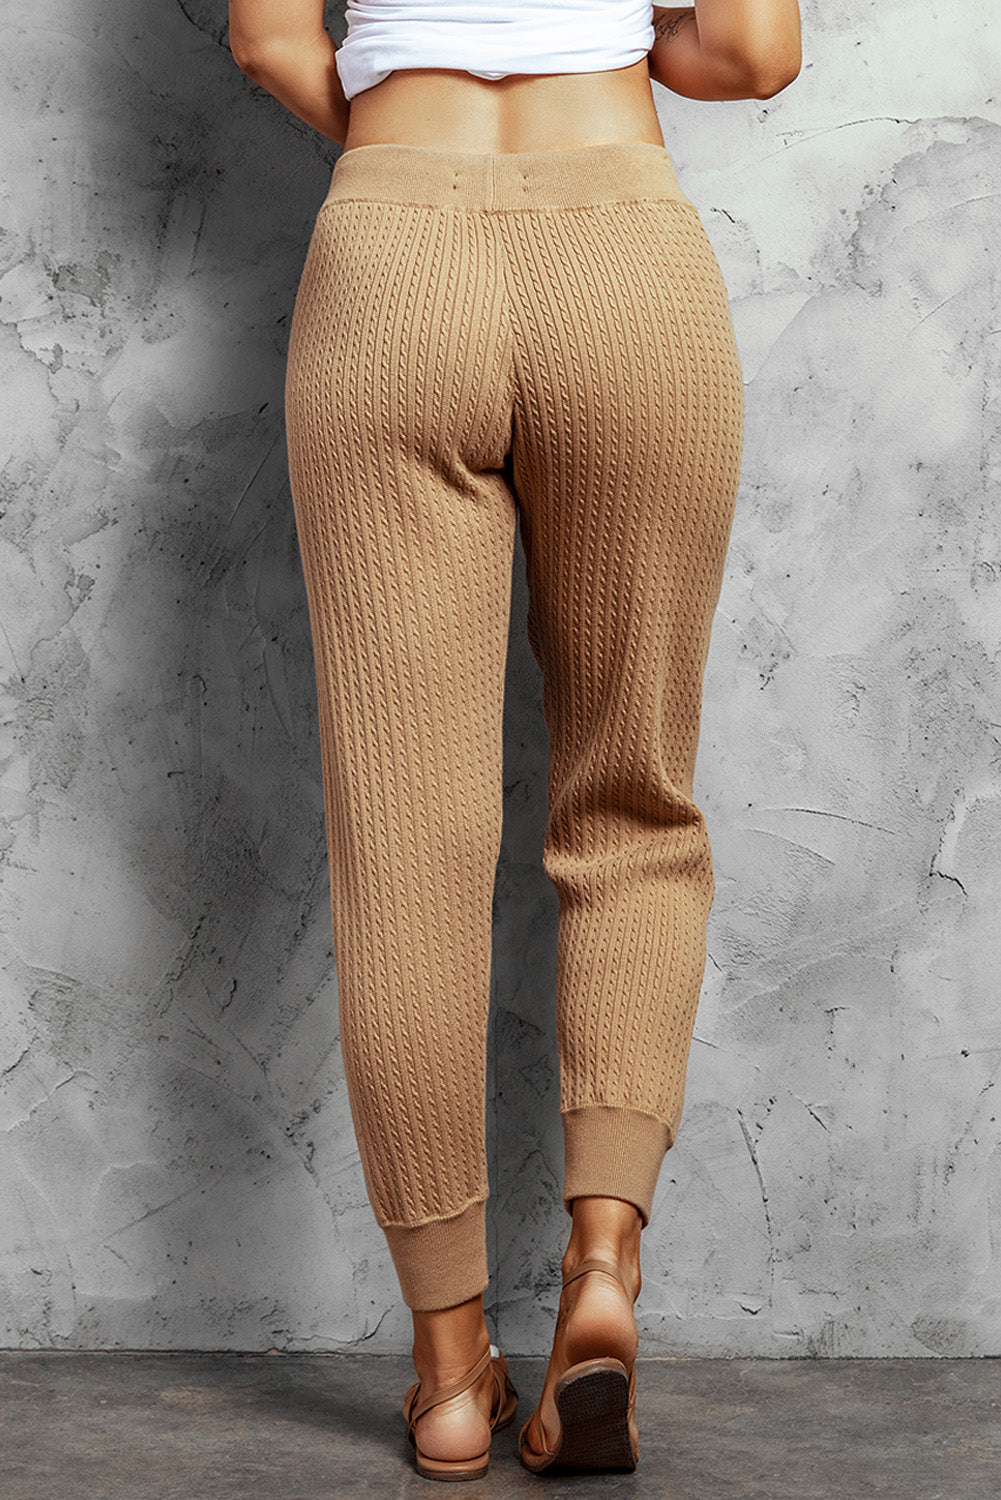 Pantalon de Jogging Femme Kaki Taille Haute en Maille Cotelee